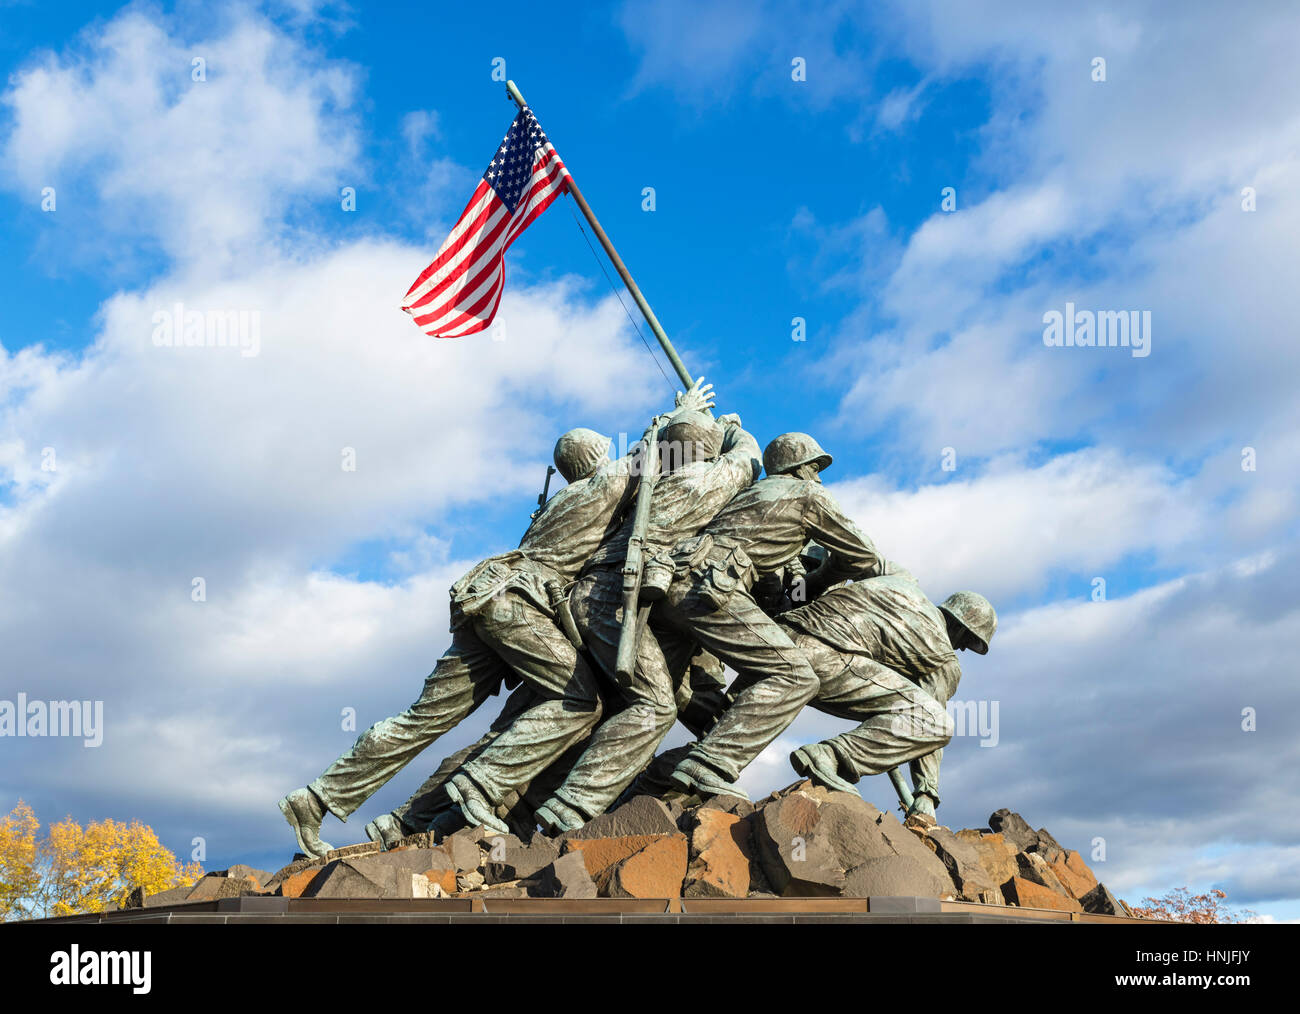 Iwo Jima Memorial, Washington DC. L'United States Marine Corps War Memorial, près de Rosslyn, le comté d'Arlington, Virginie, États-Unis Banque D'Images